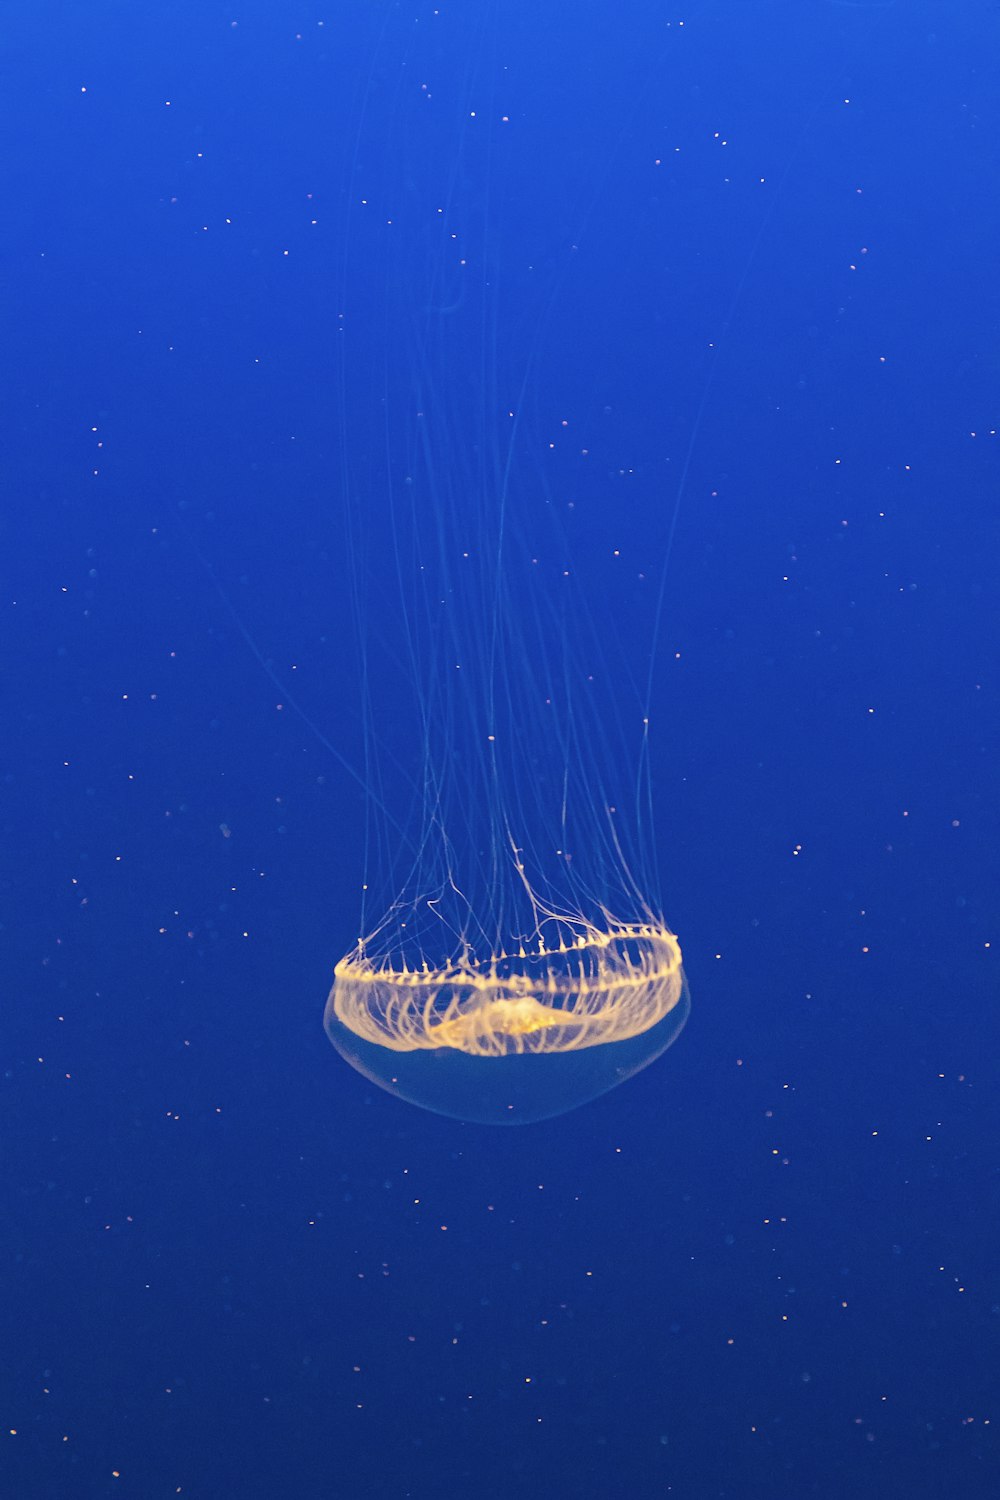 beige jellyfish